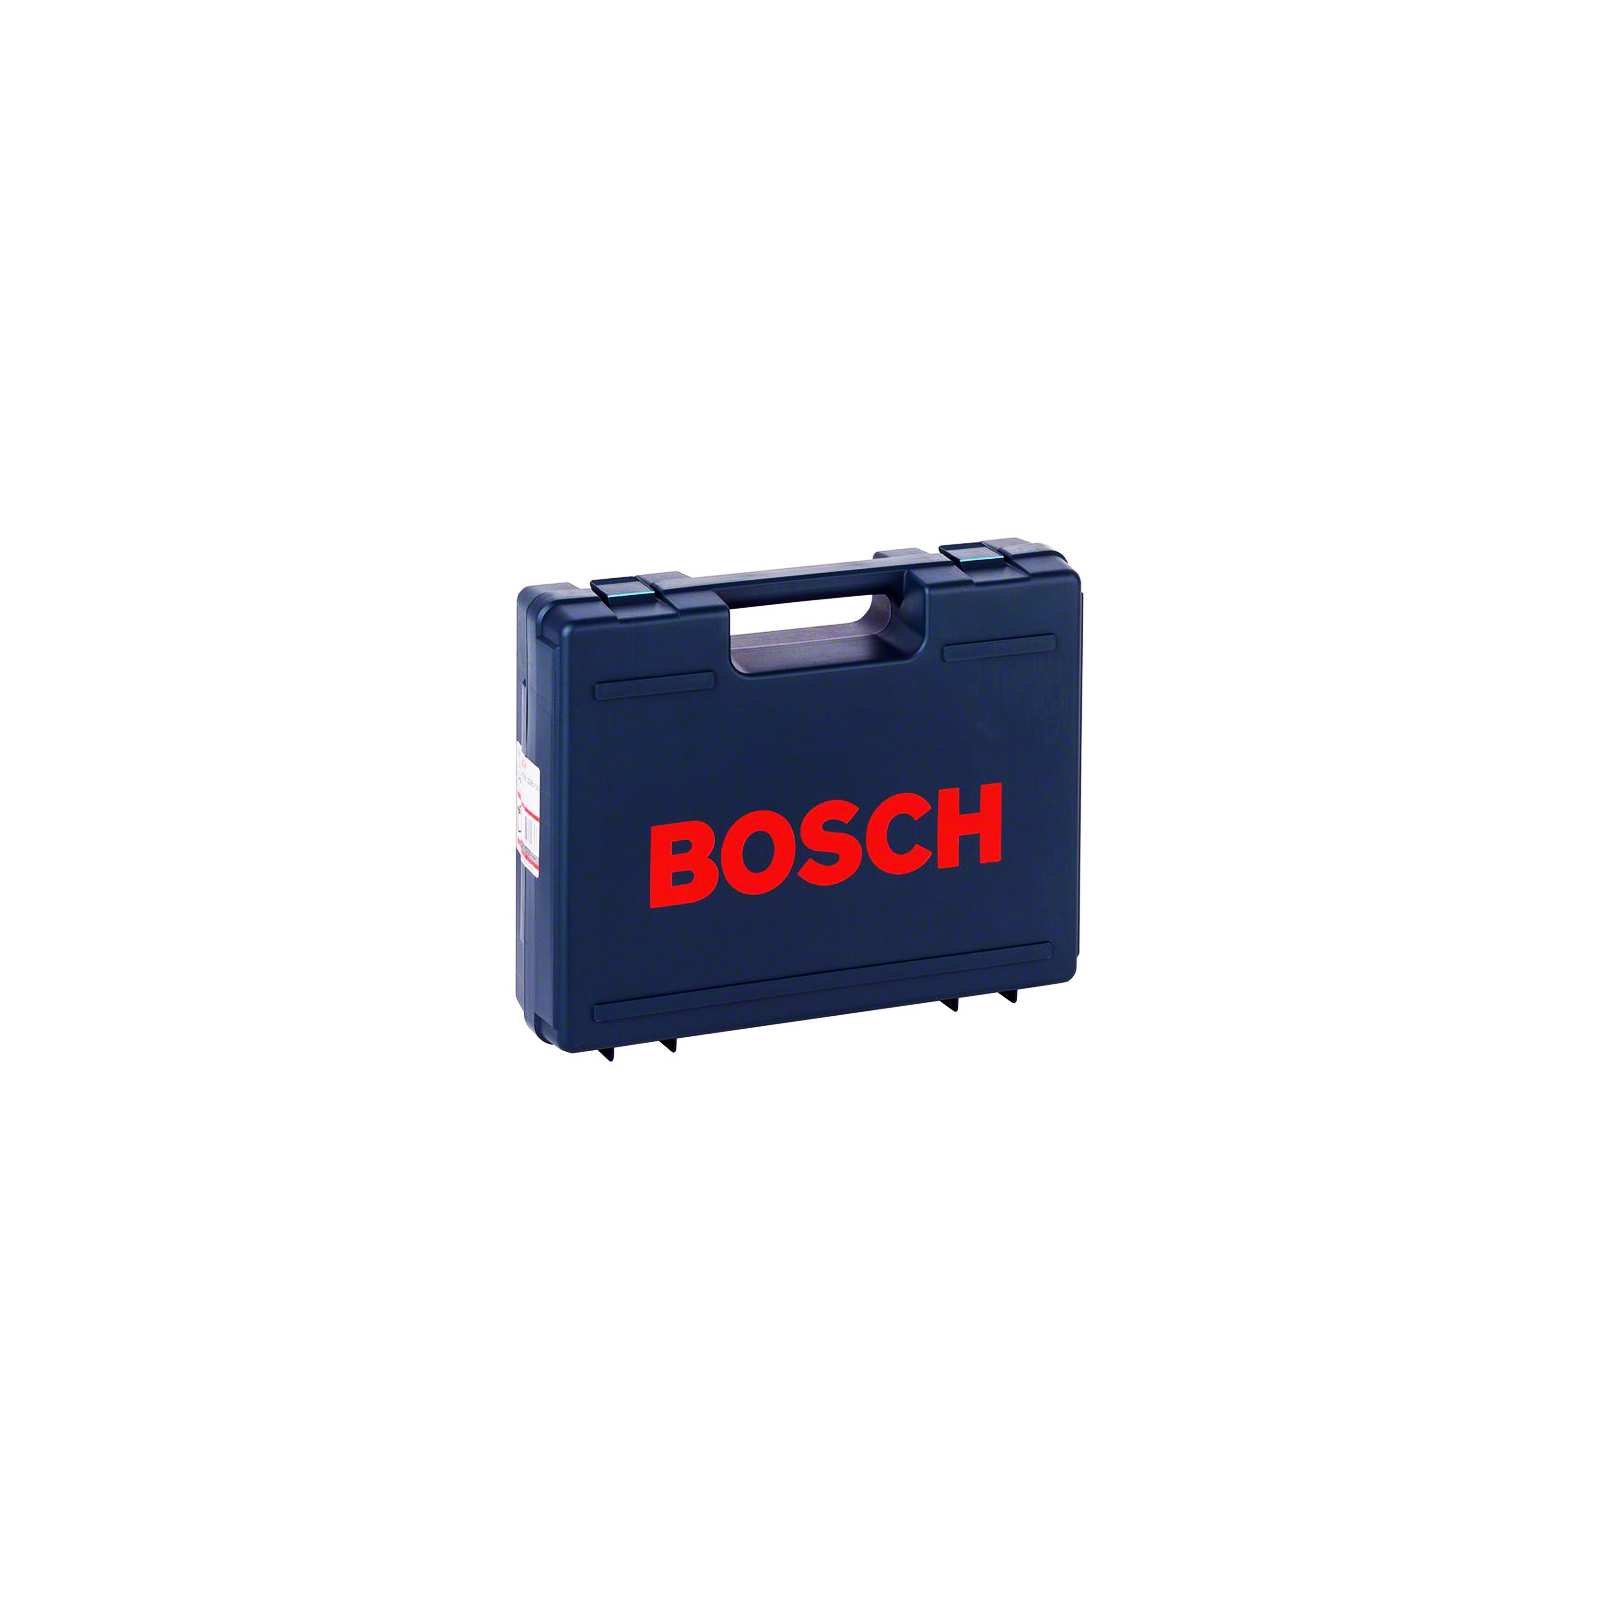 Ящик для інструментів Bosch для серий инструментов PSB/CSB/GBM10SR (2.605.438.328)